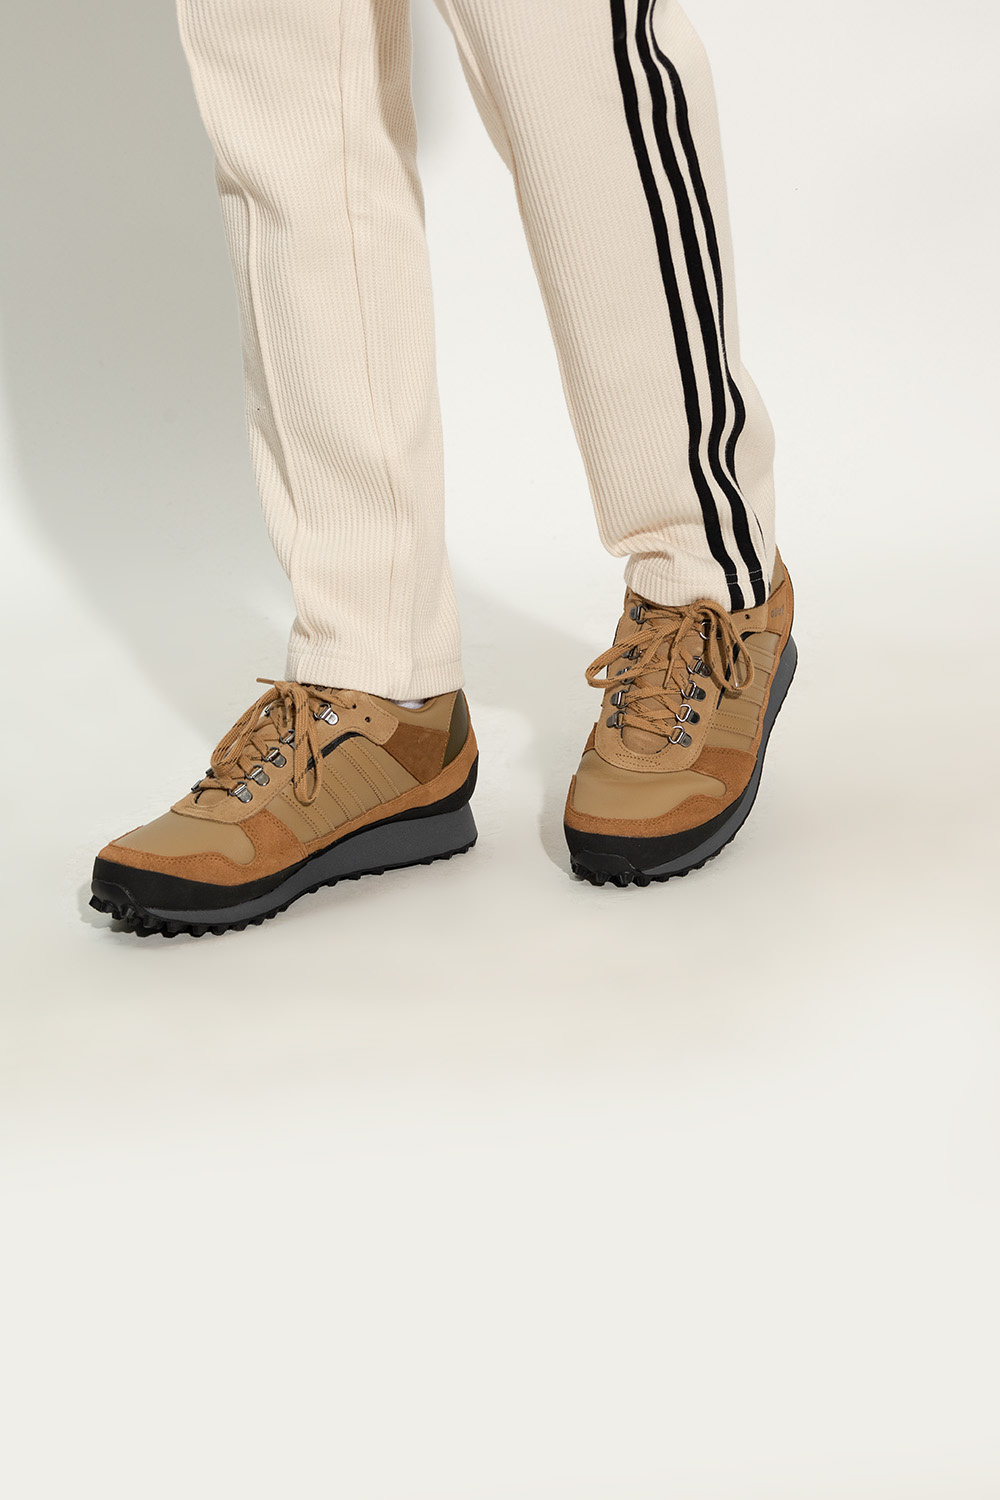 zapatillas de running Adidas mujer voladoras 10k talla 39 IetpShops Morocco - Brown 'HIAVEN ADIDAS Originals